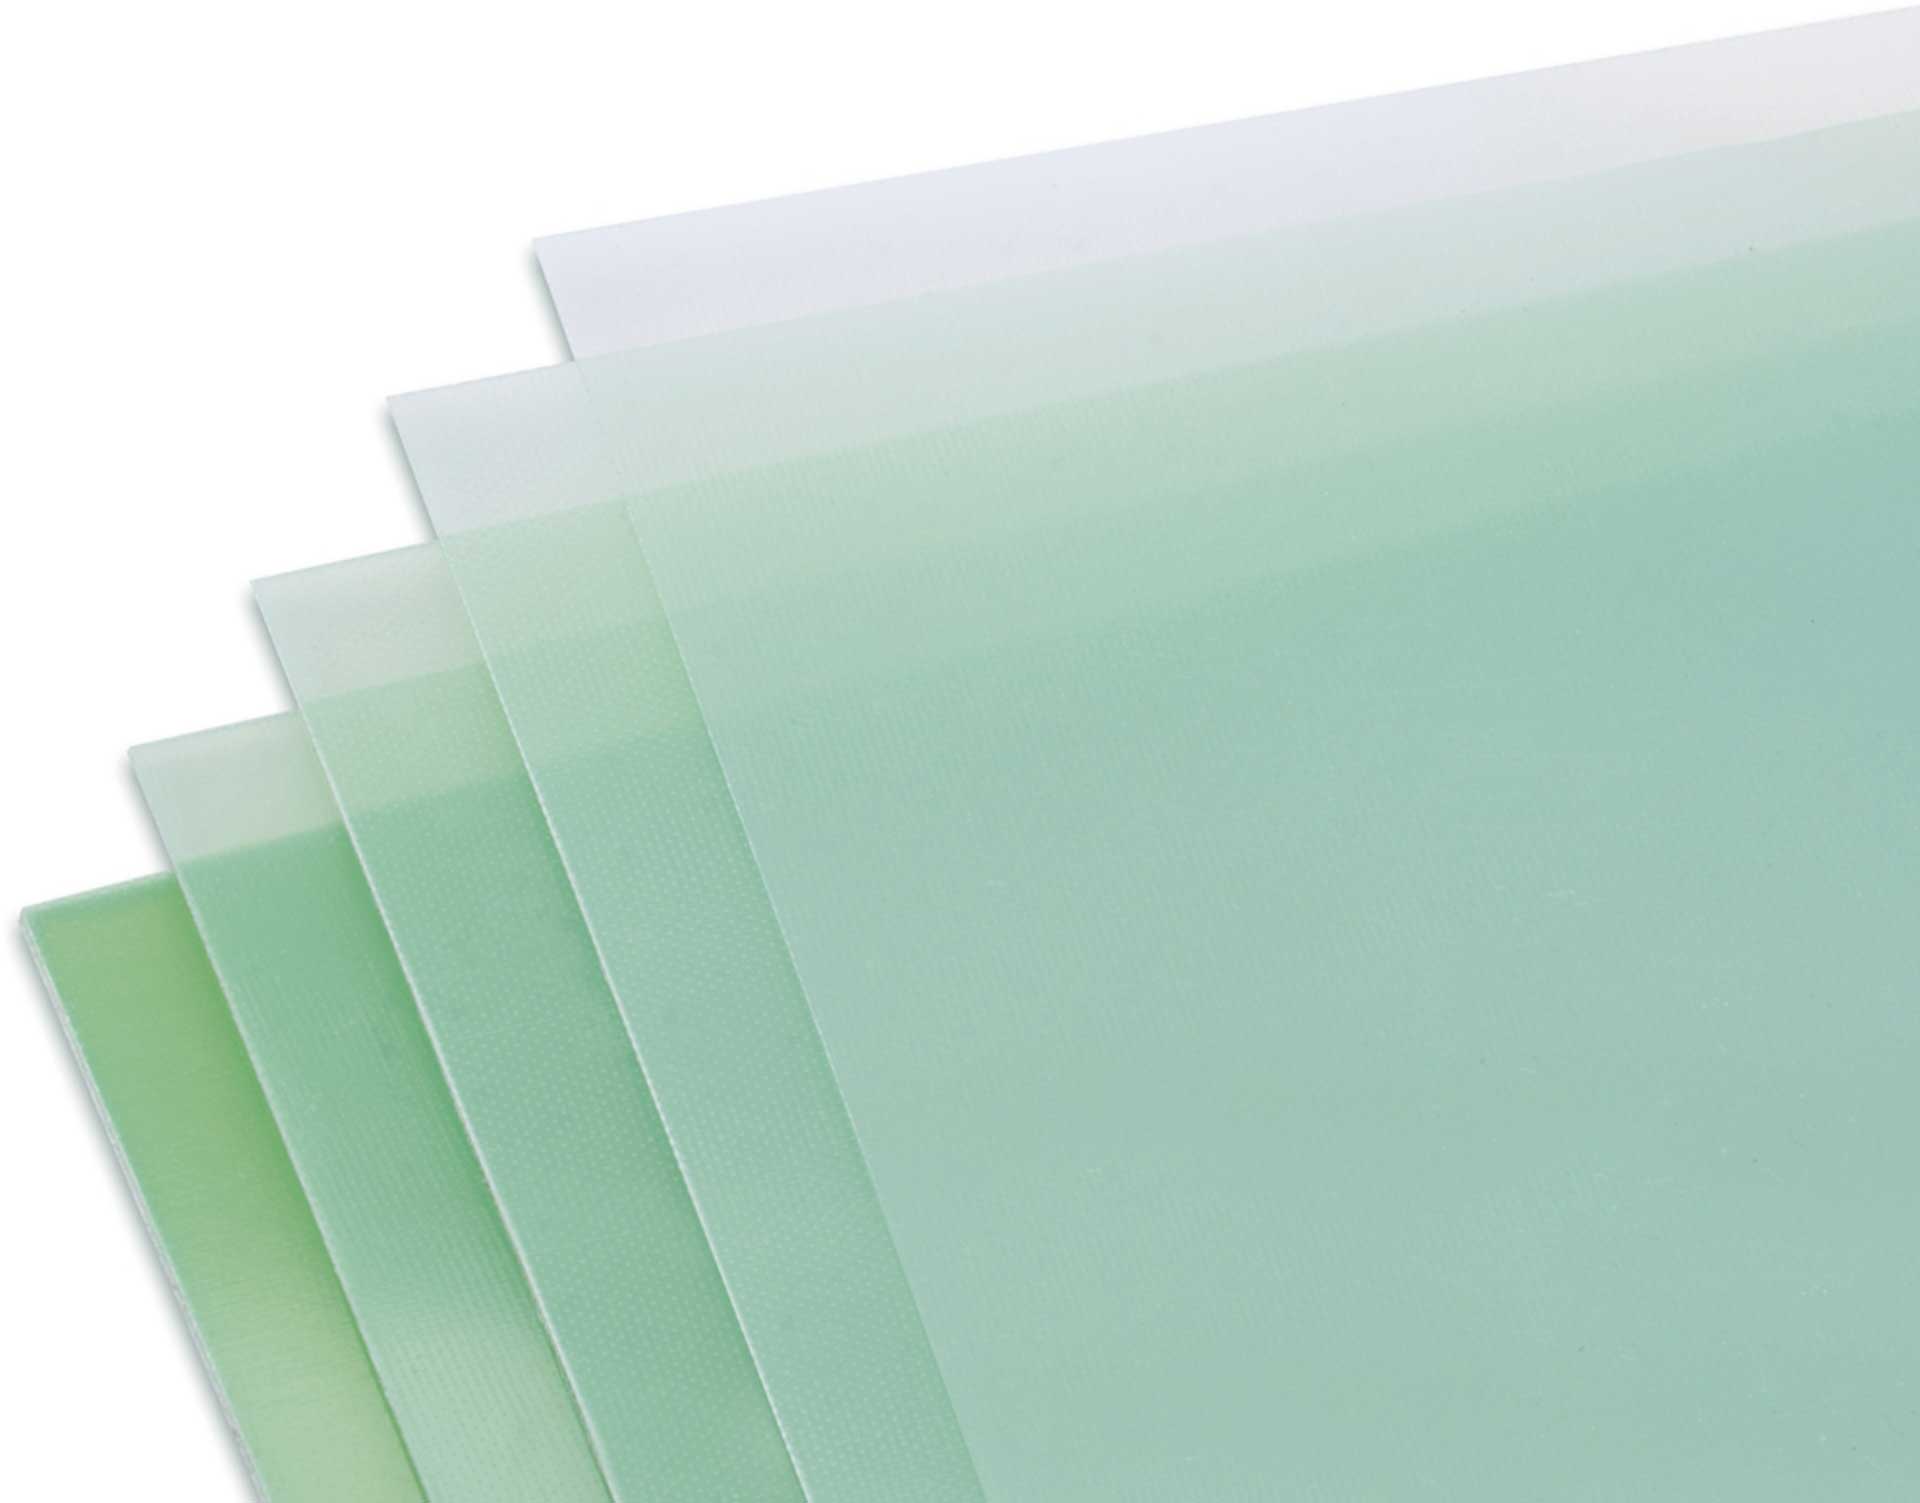 Modellbau Lindinger GFK-Platte 3,0x610x340mm matt, grünlich transparent